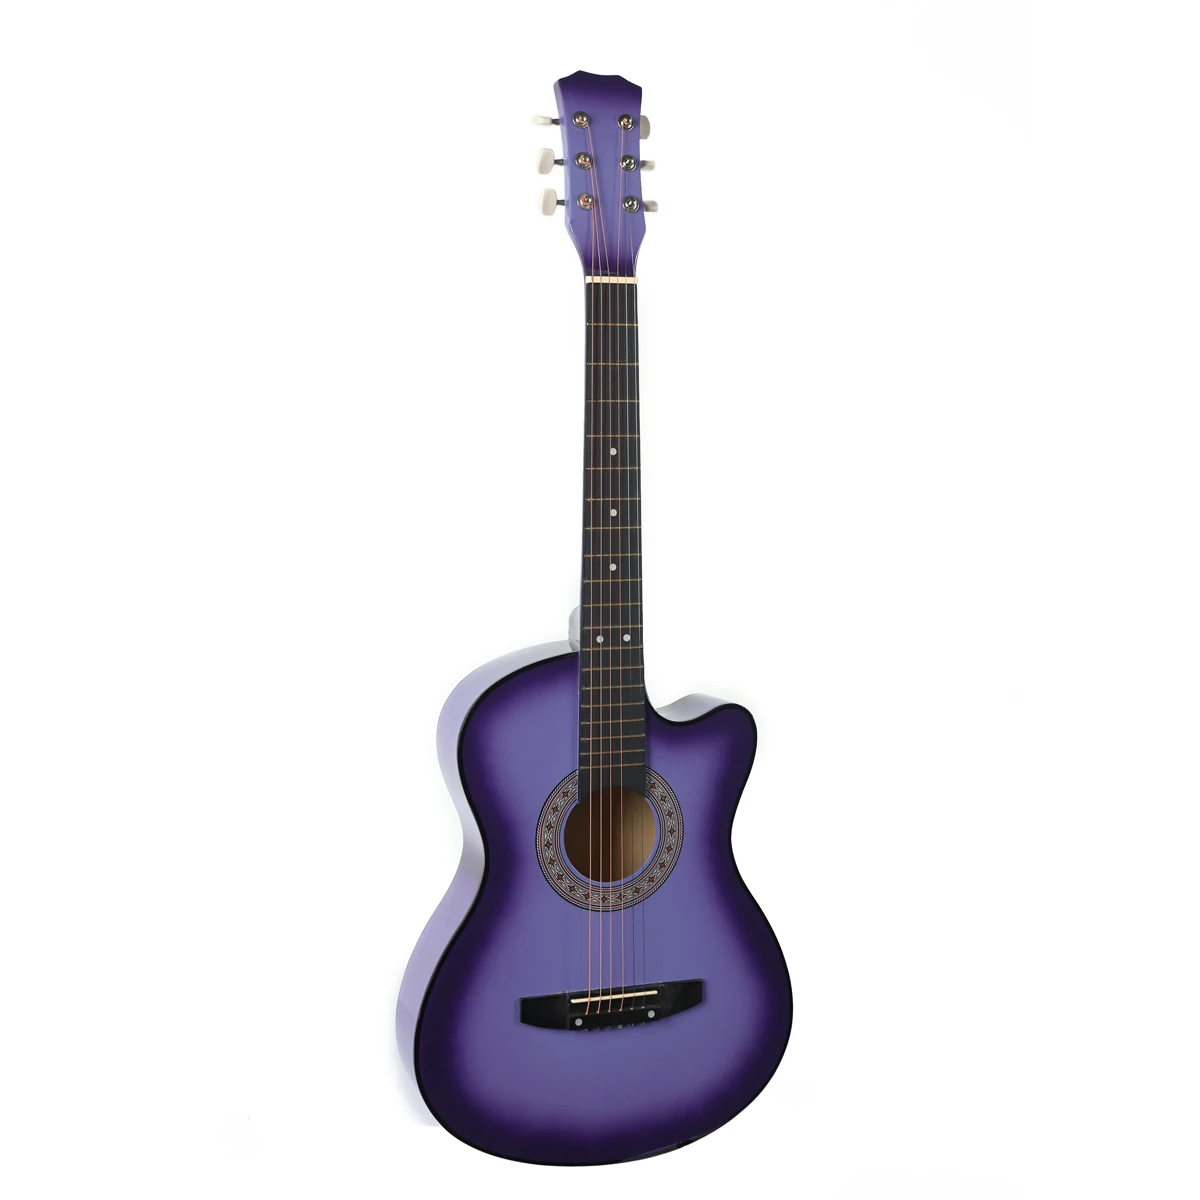 38 дюймов деревянная акустическая гитара для начинающих с гитарным ремешком, стальные струны, музыкальные инструменты, 6 цветов - Цвет: Фиолетовый